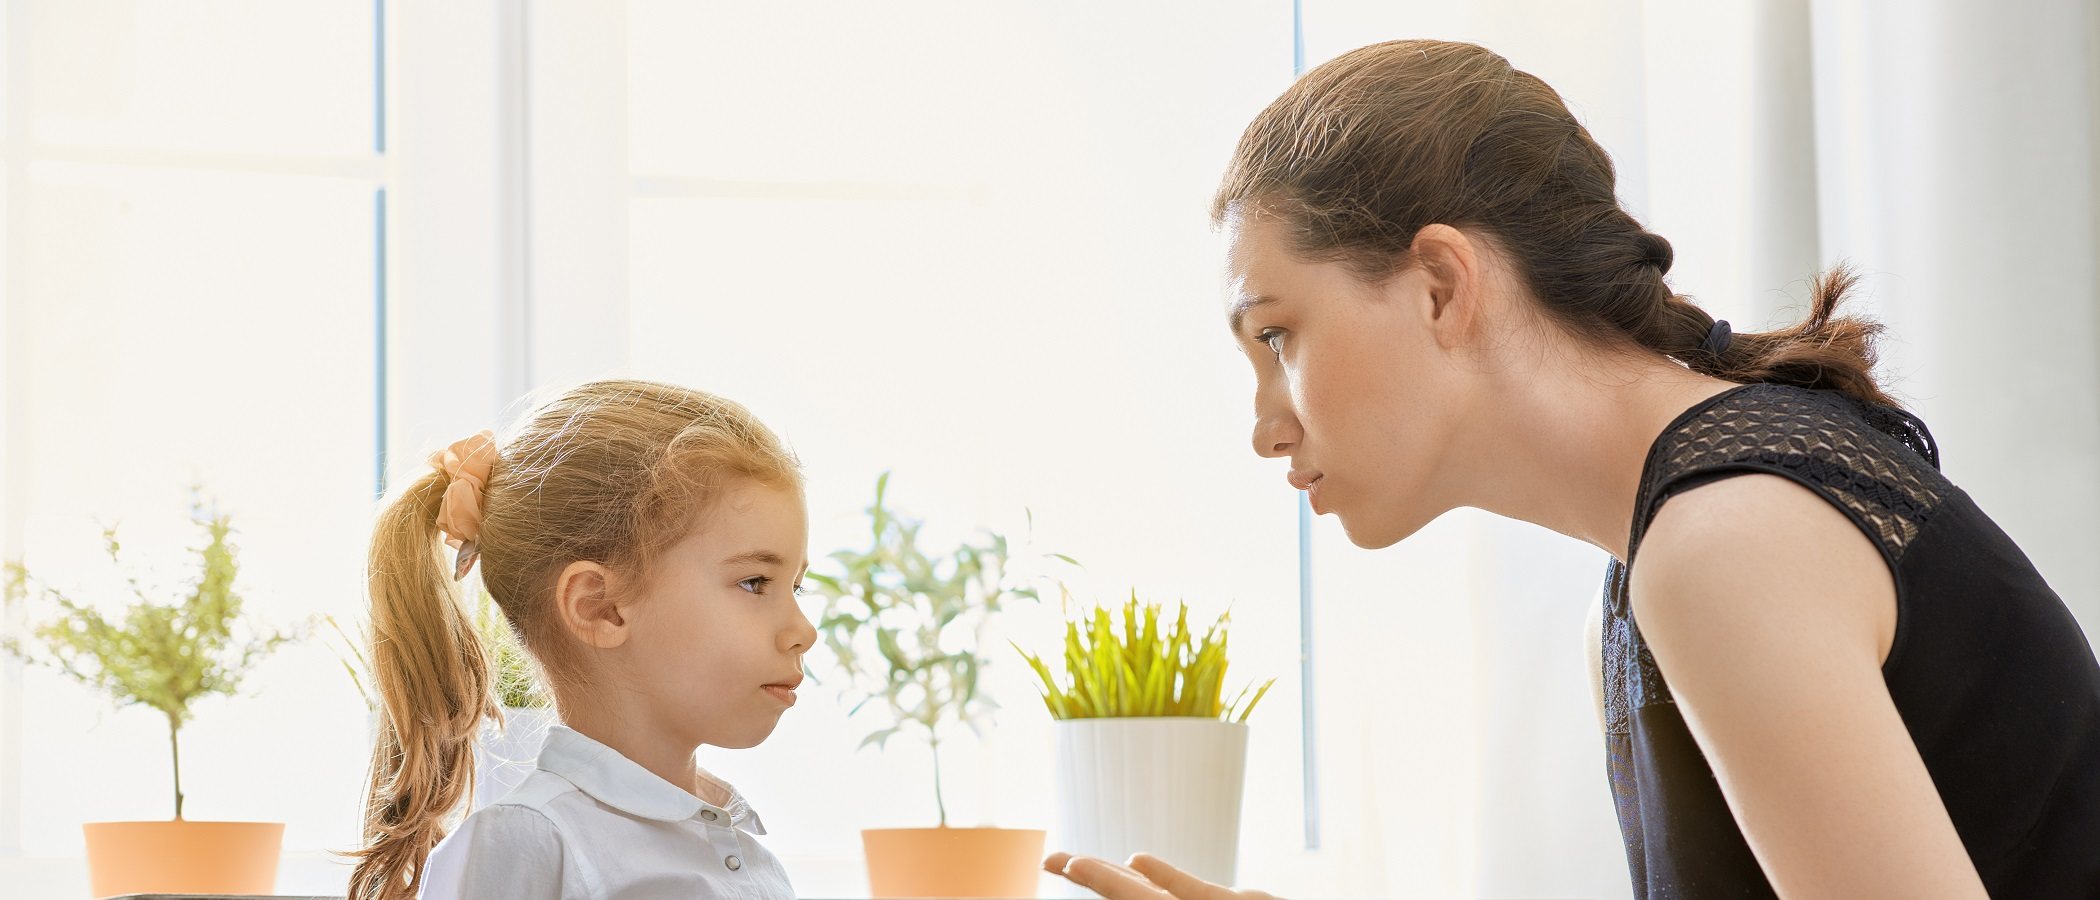 Disciplinar no es abusar emocionalmente de los niños